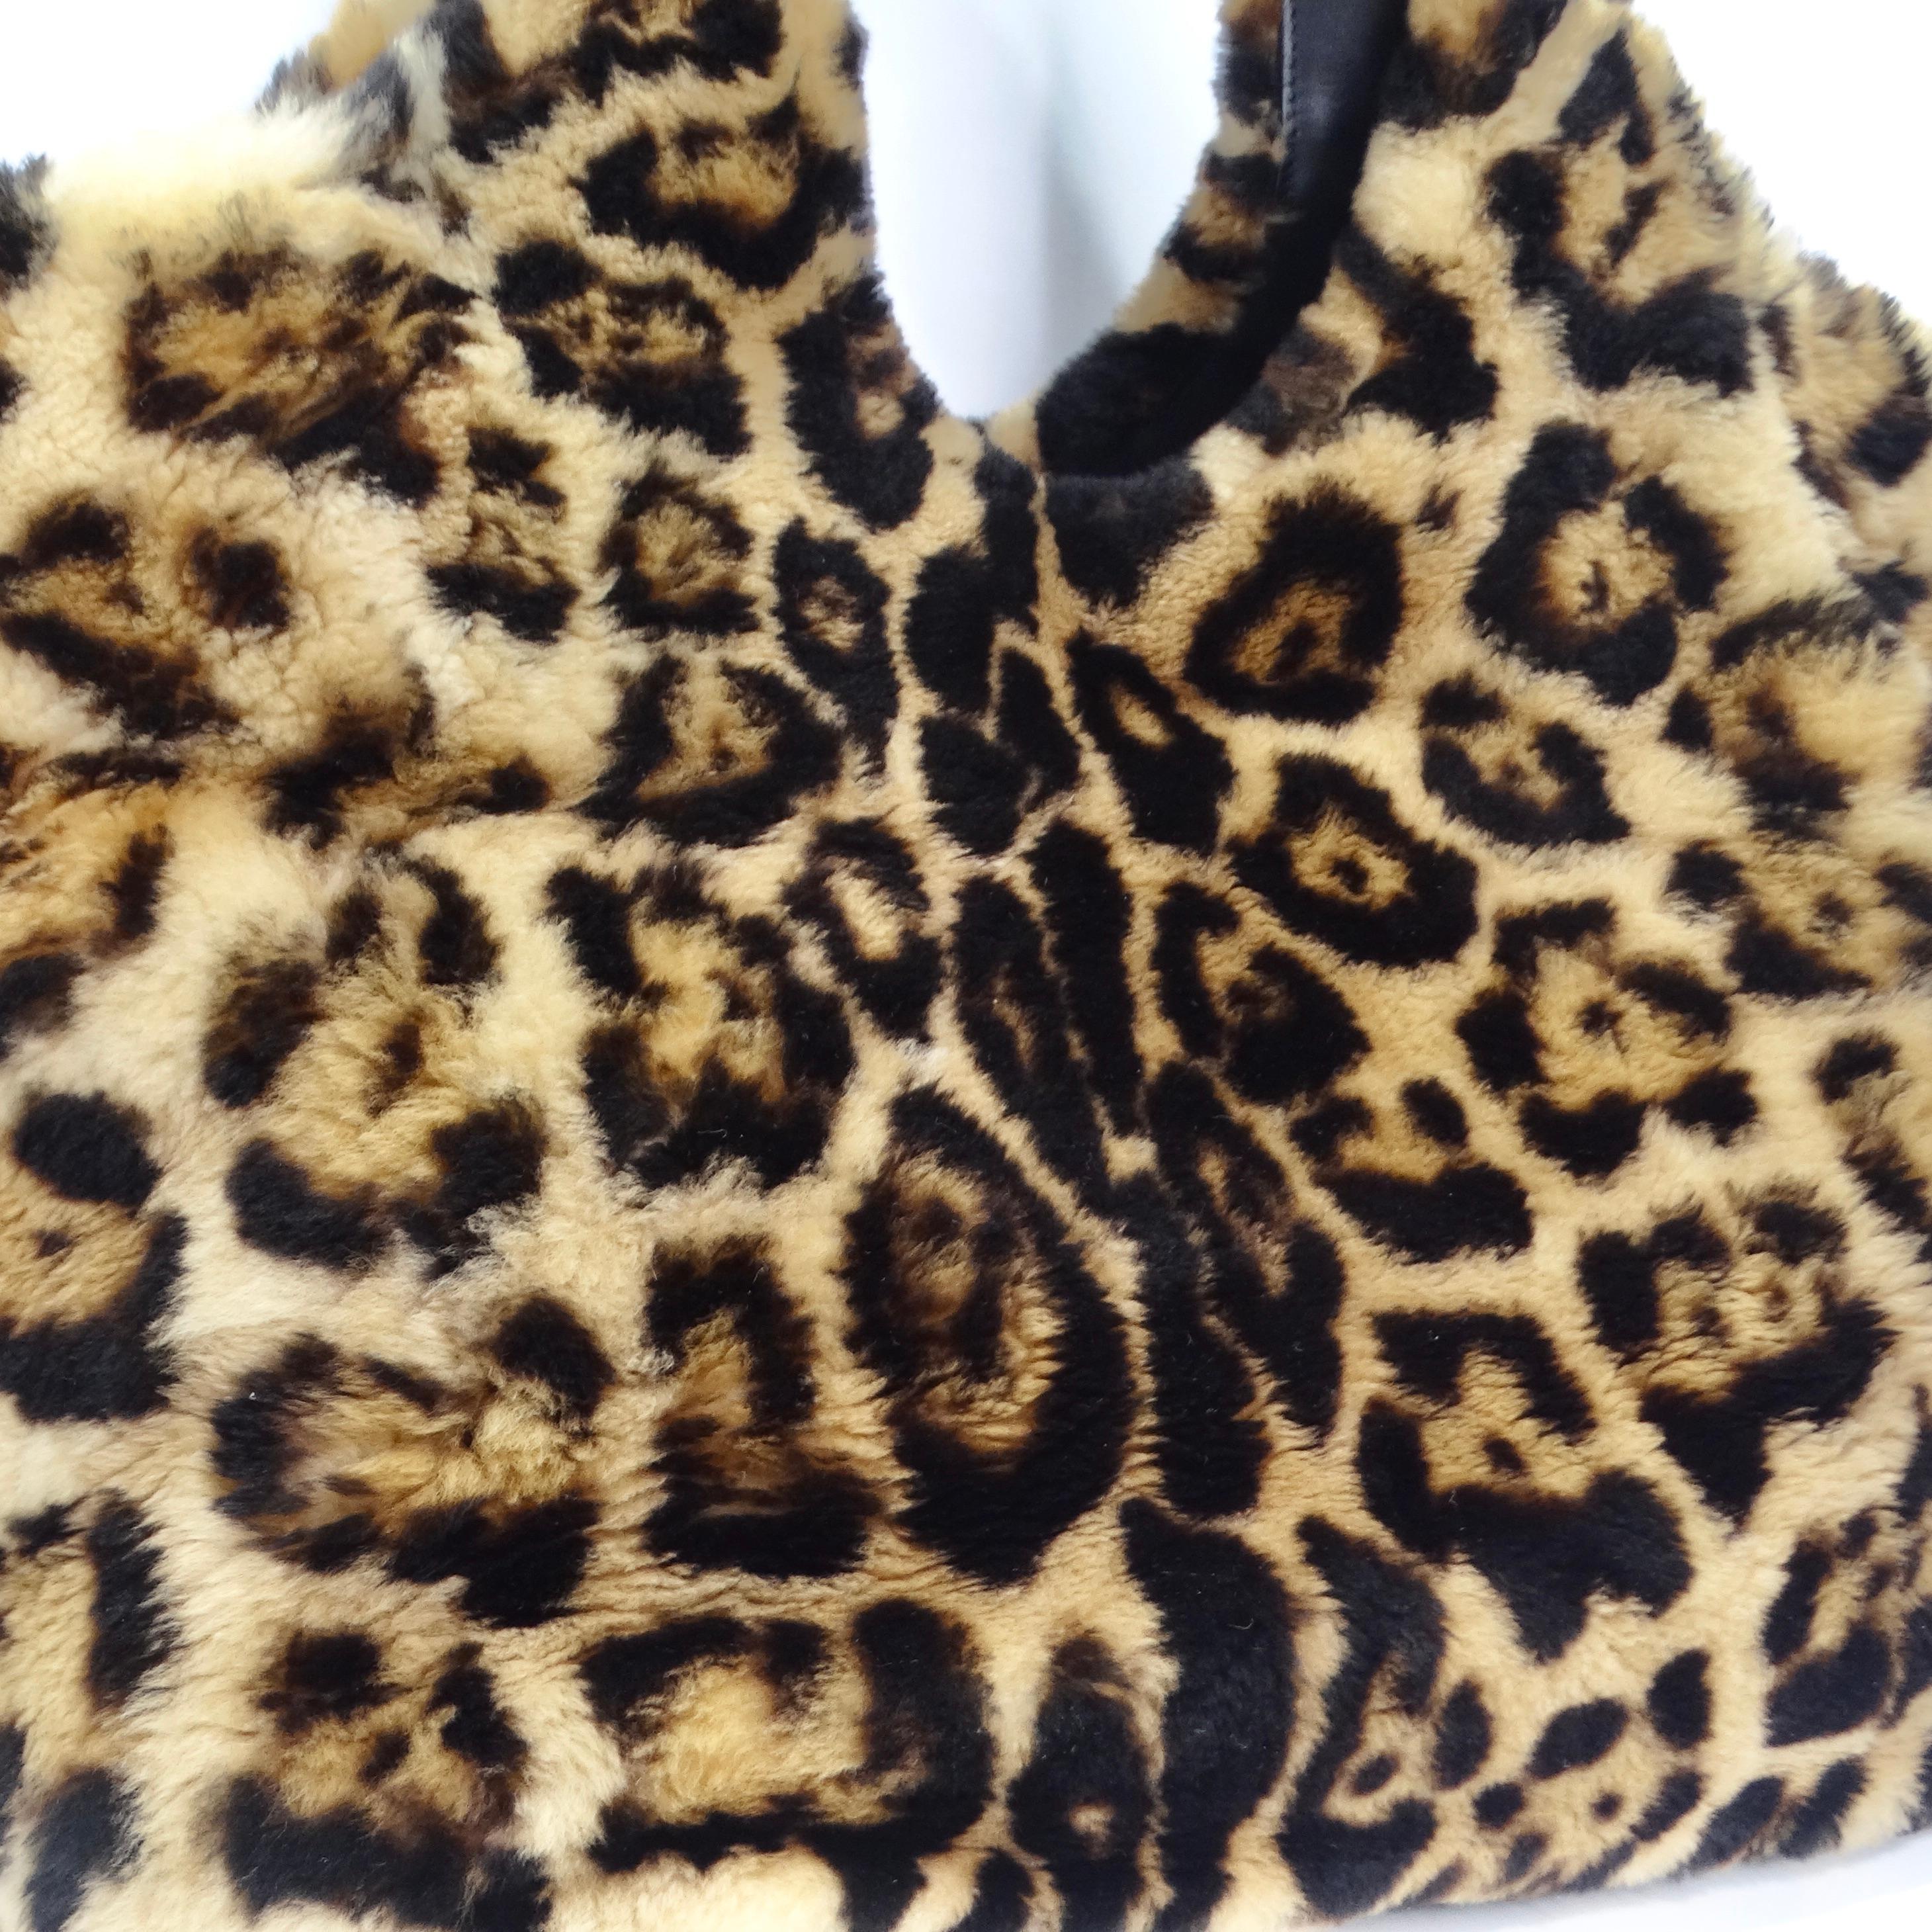 Laissez-vous séduire par le monde de la haute couture avec le sac à main Tom Ford Rare Leopard Print Fur Handbag - un sac fourre-tout exceptionnel, aussi luxueux qu'étonnant. Faites preuve d'audace avec ce sac fourre-tout exceptionnellement rare,